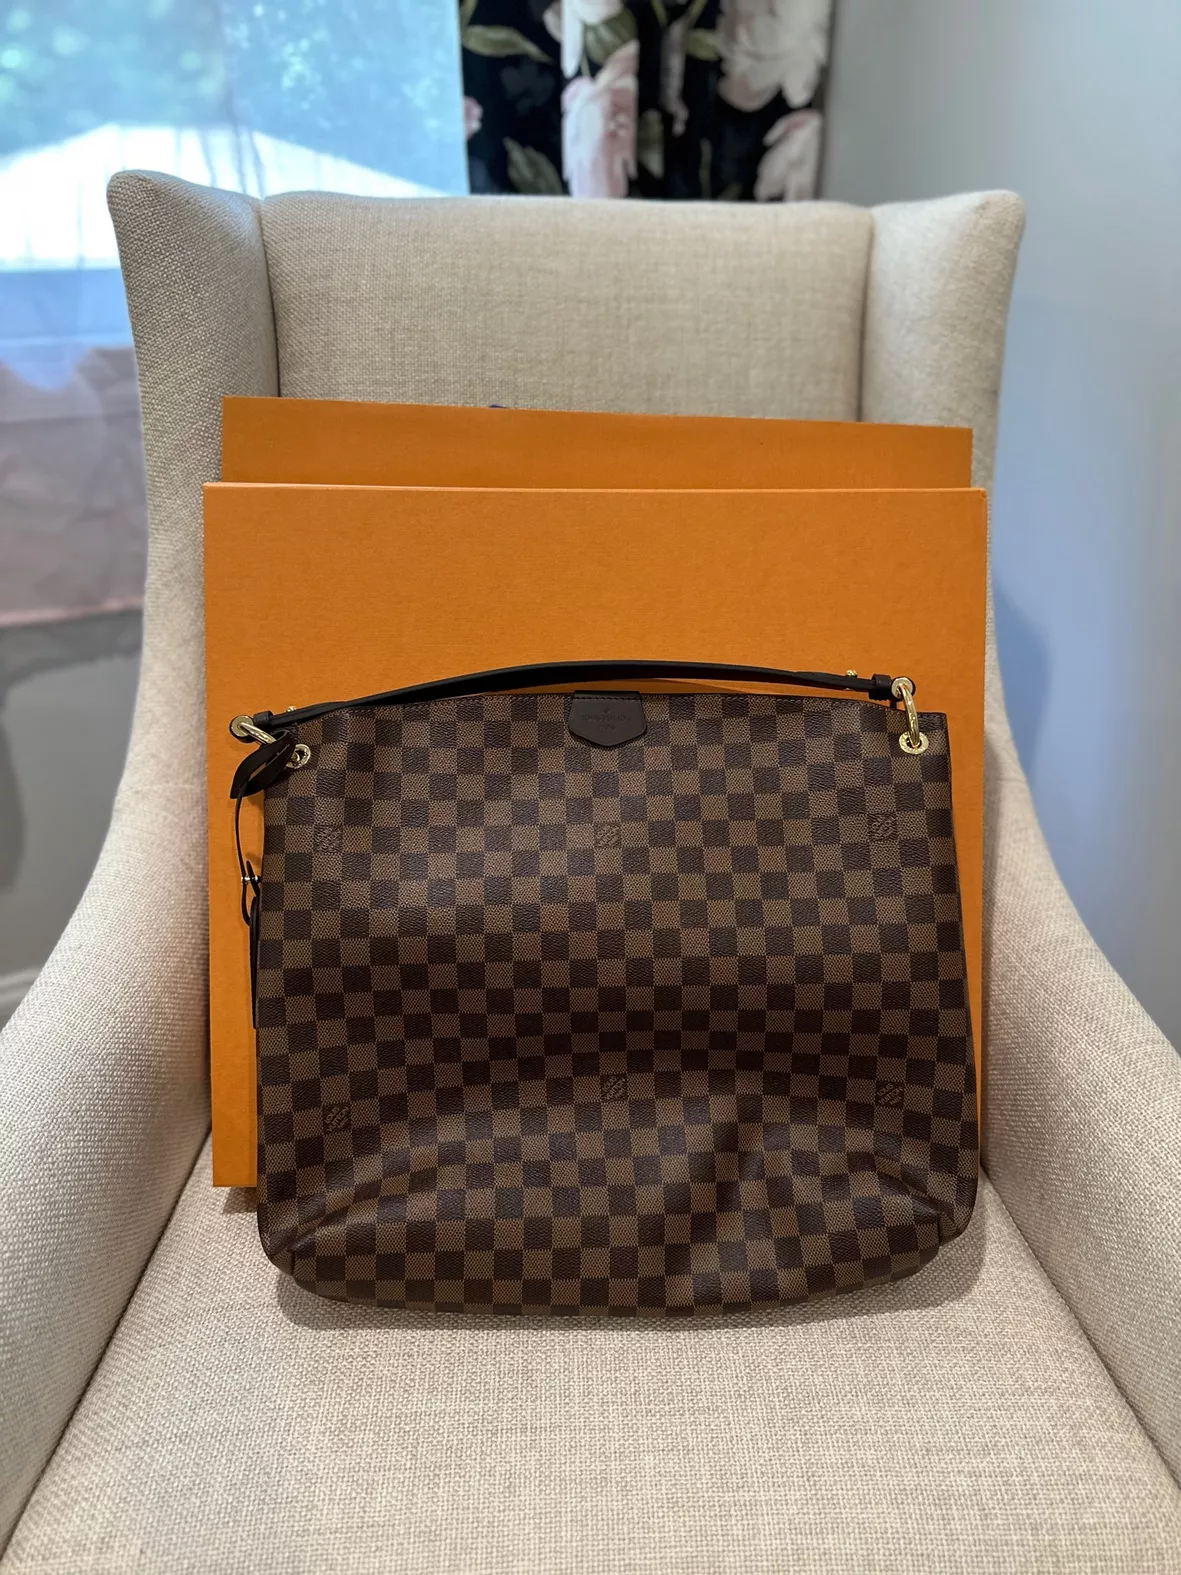 Louis Vuitton Handbag Unboxing 